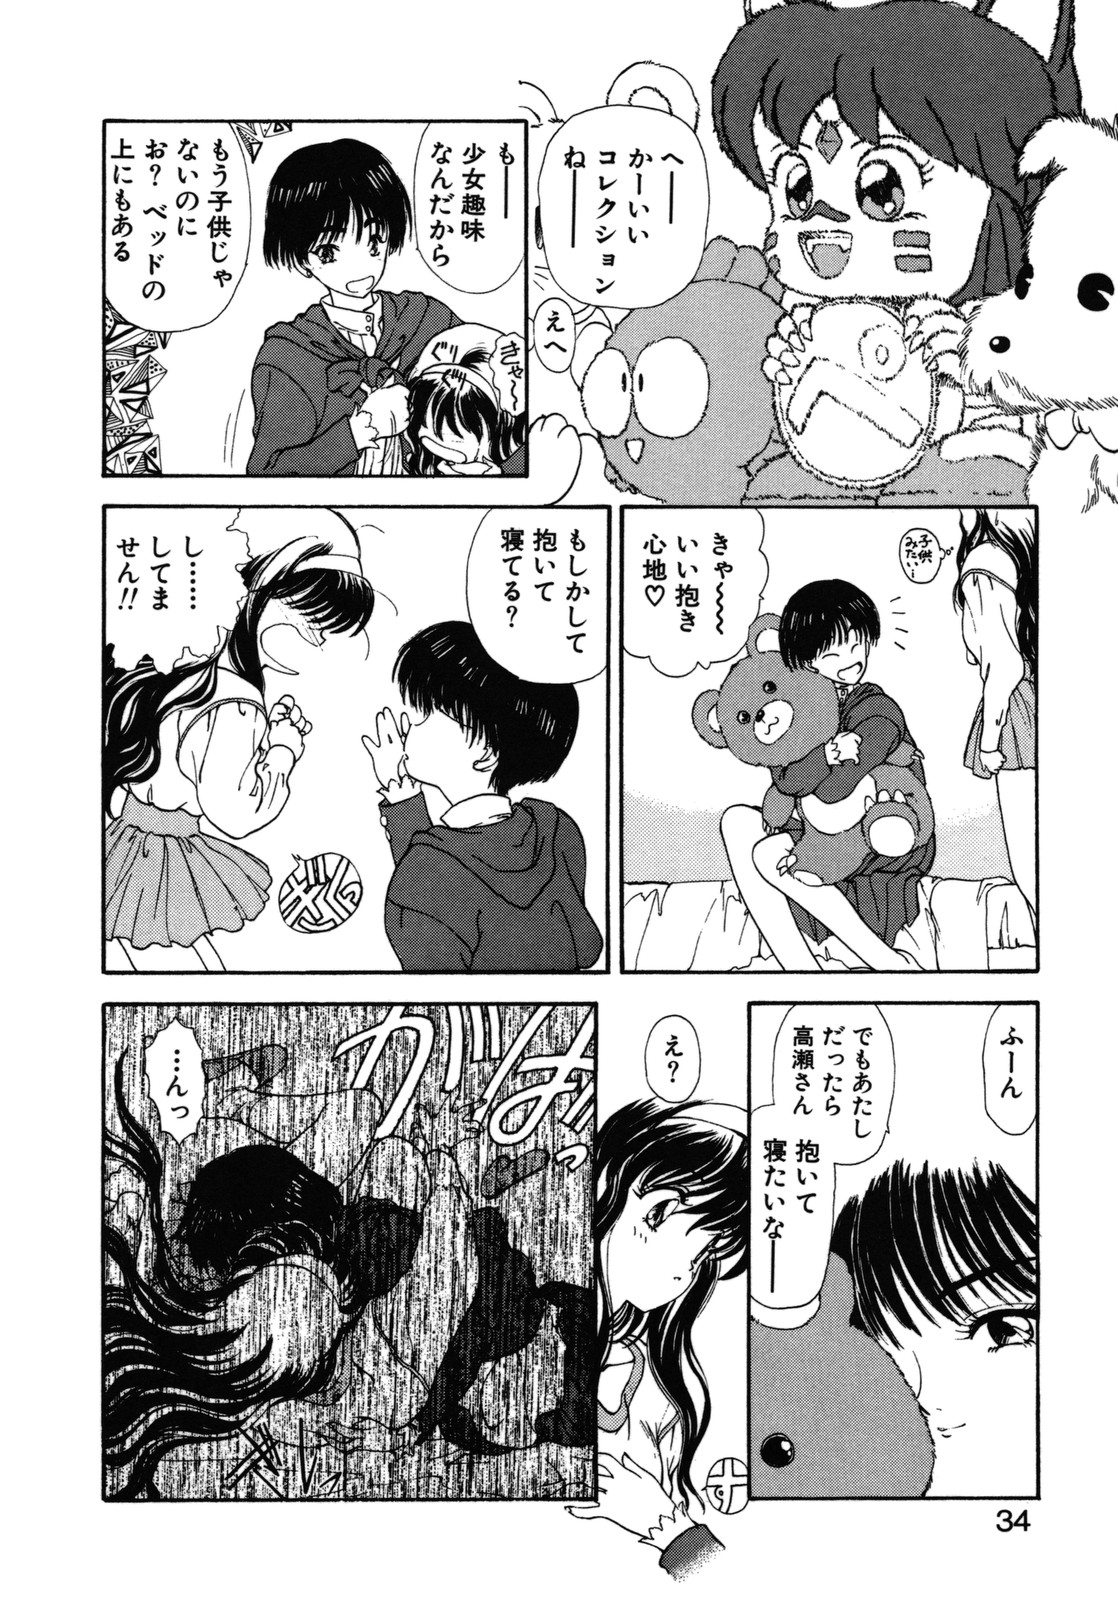 [Utatane Hiroyuki] COUNT DOWN page 35 full